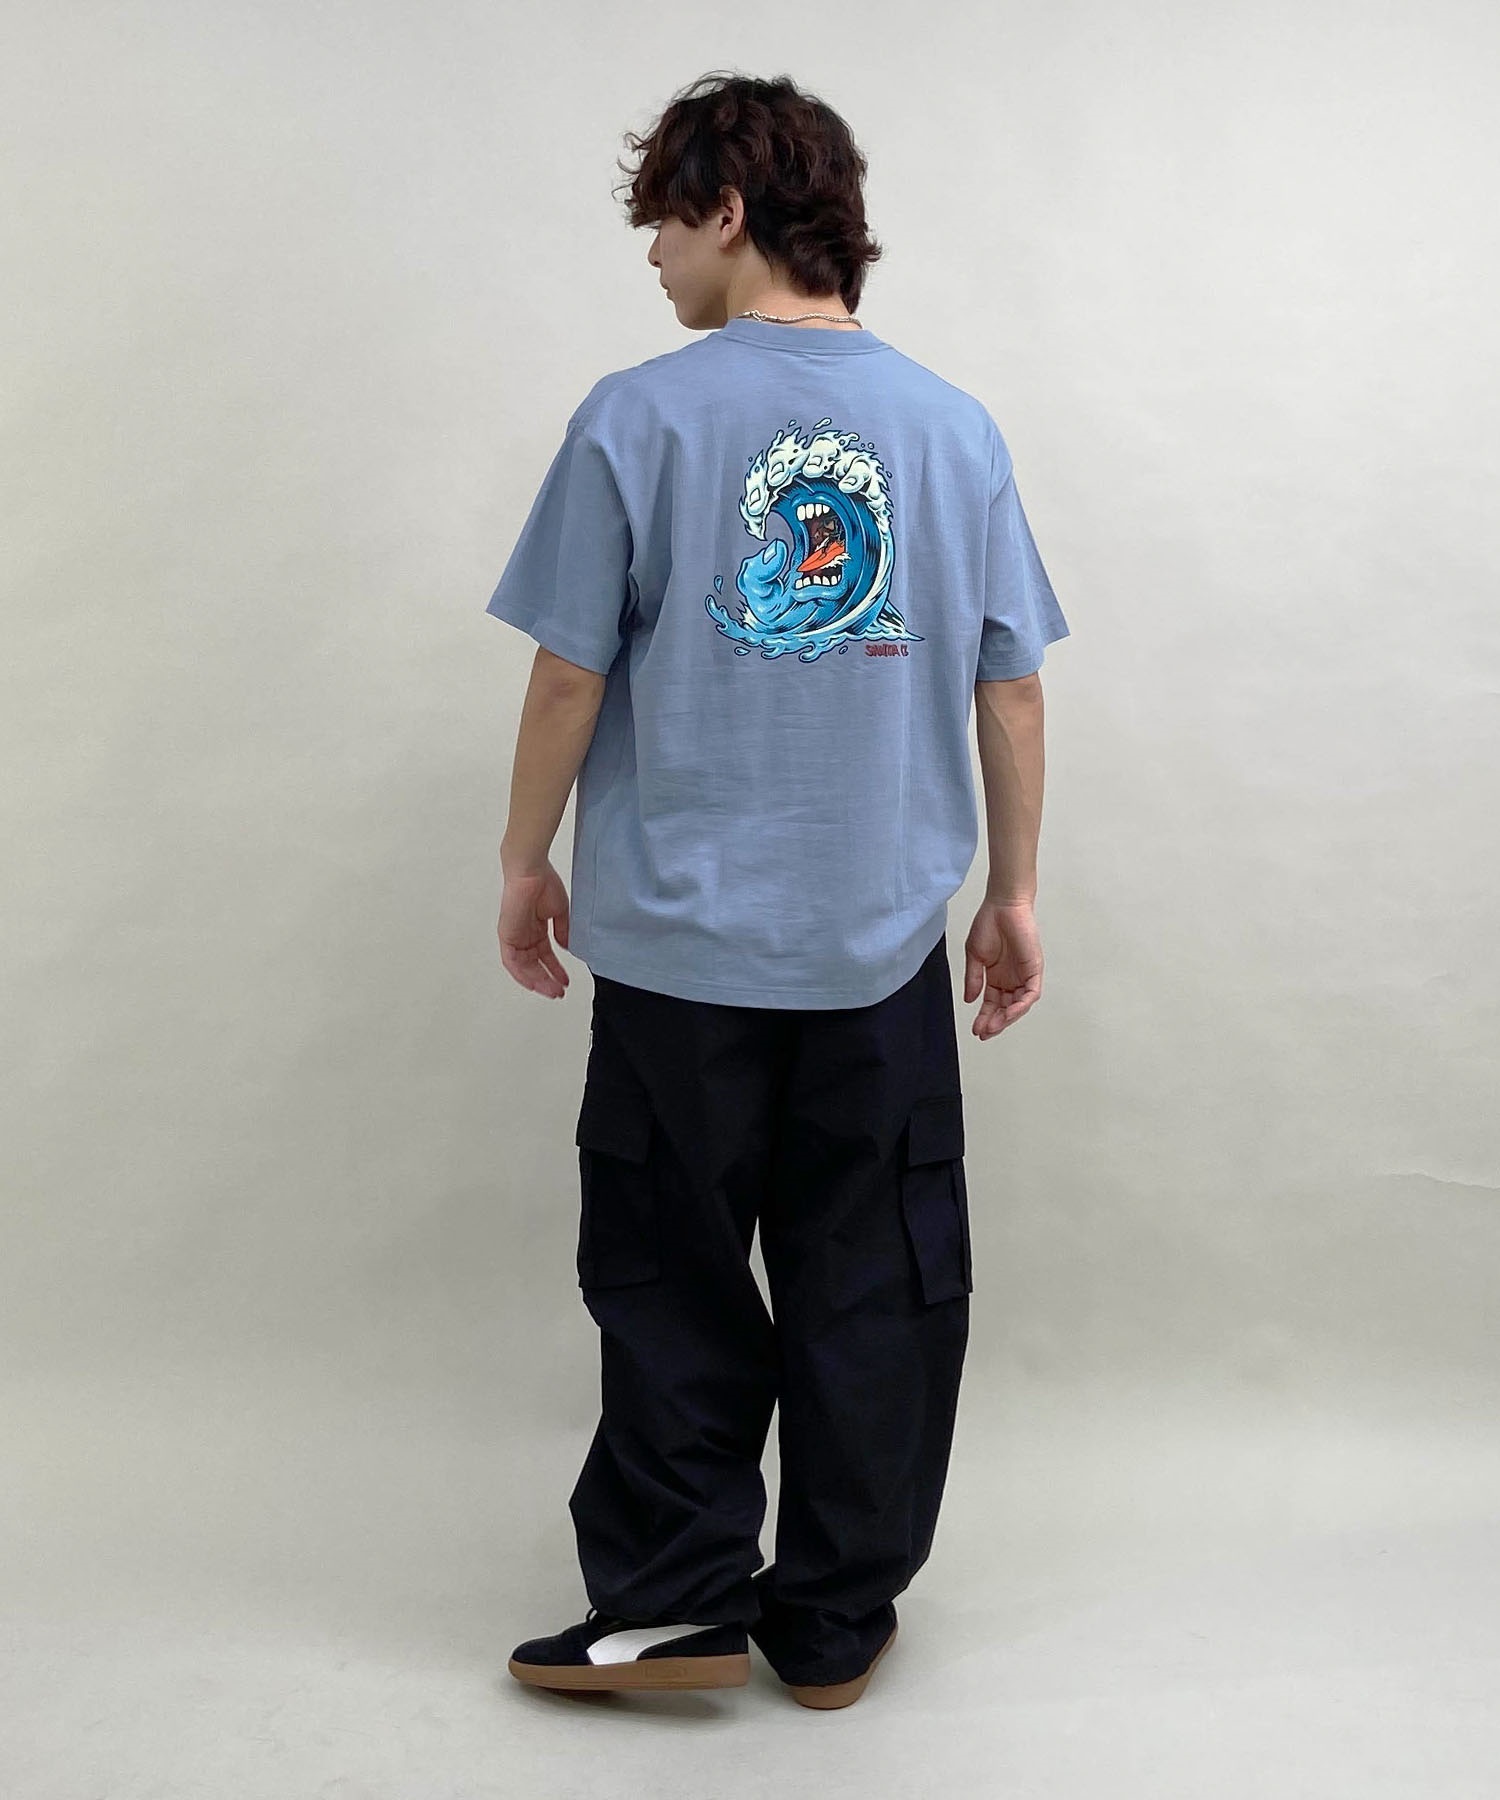 【ムラサキスポーツ限定】 SANTACRUZ サンタクルーズ メンズ 半袖 Tシャツ バックプリント 502241412(WHITE-M)